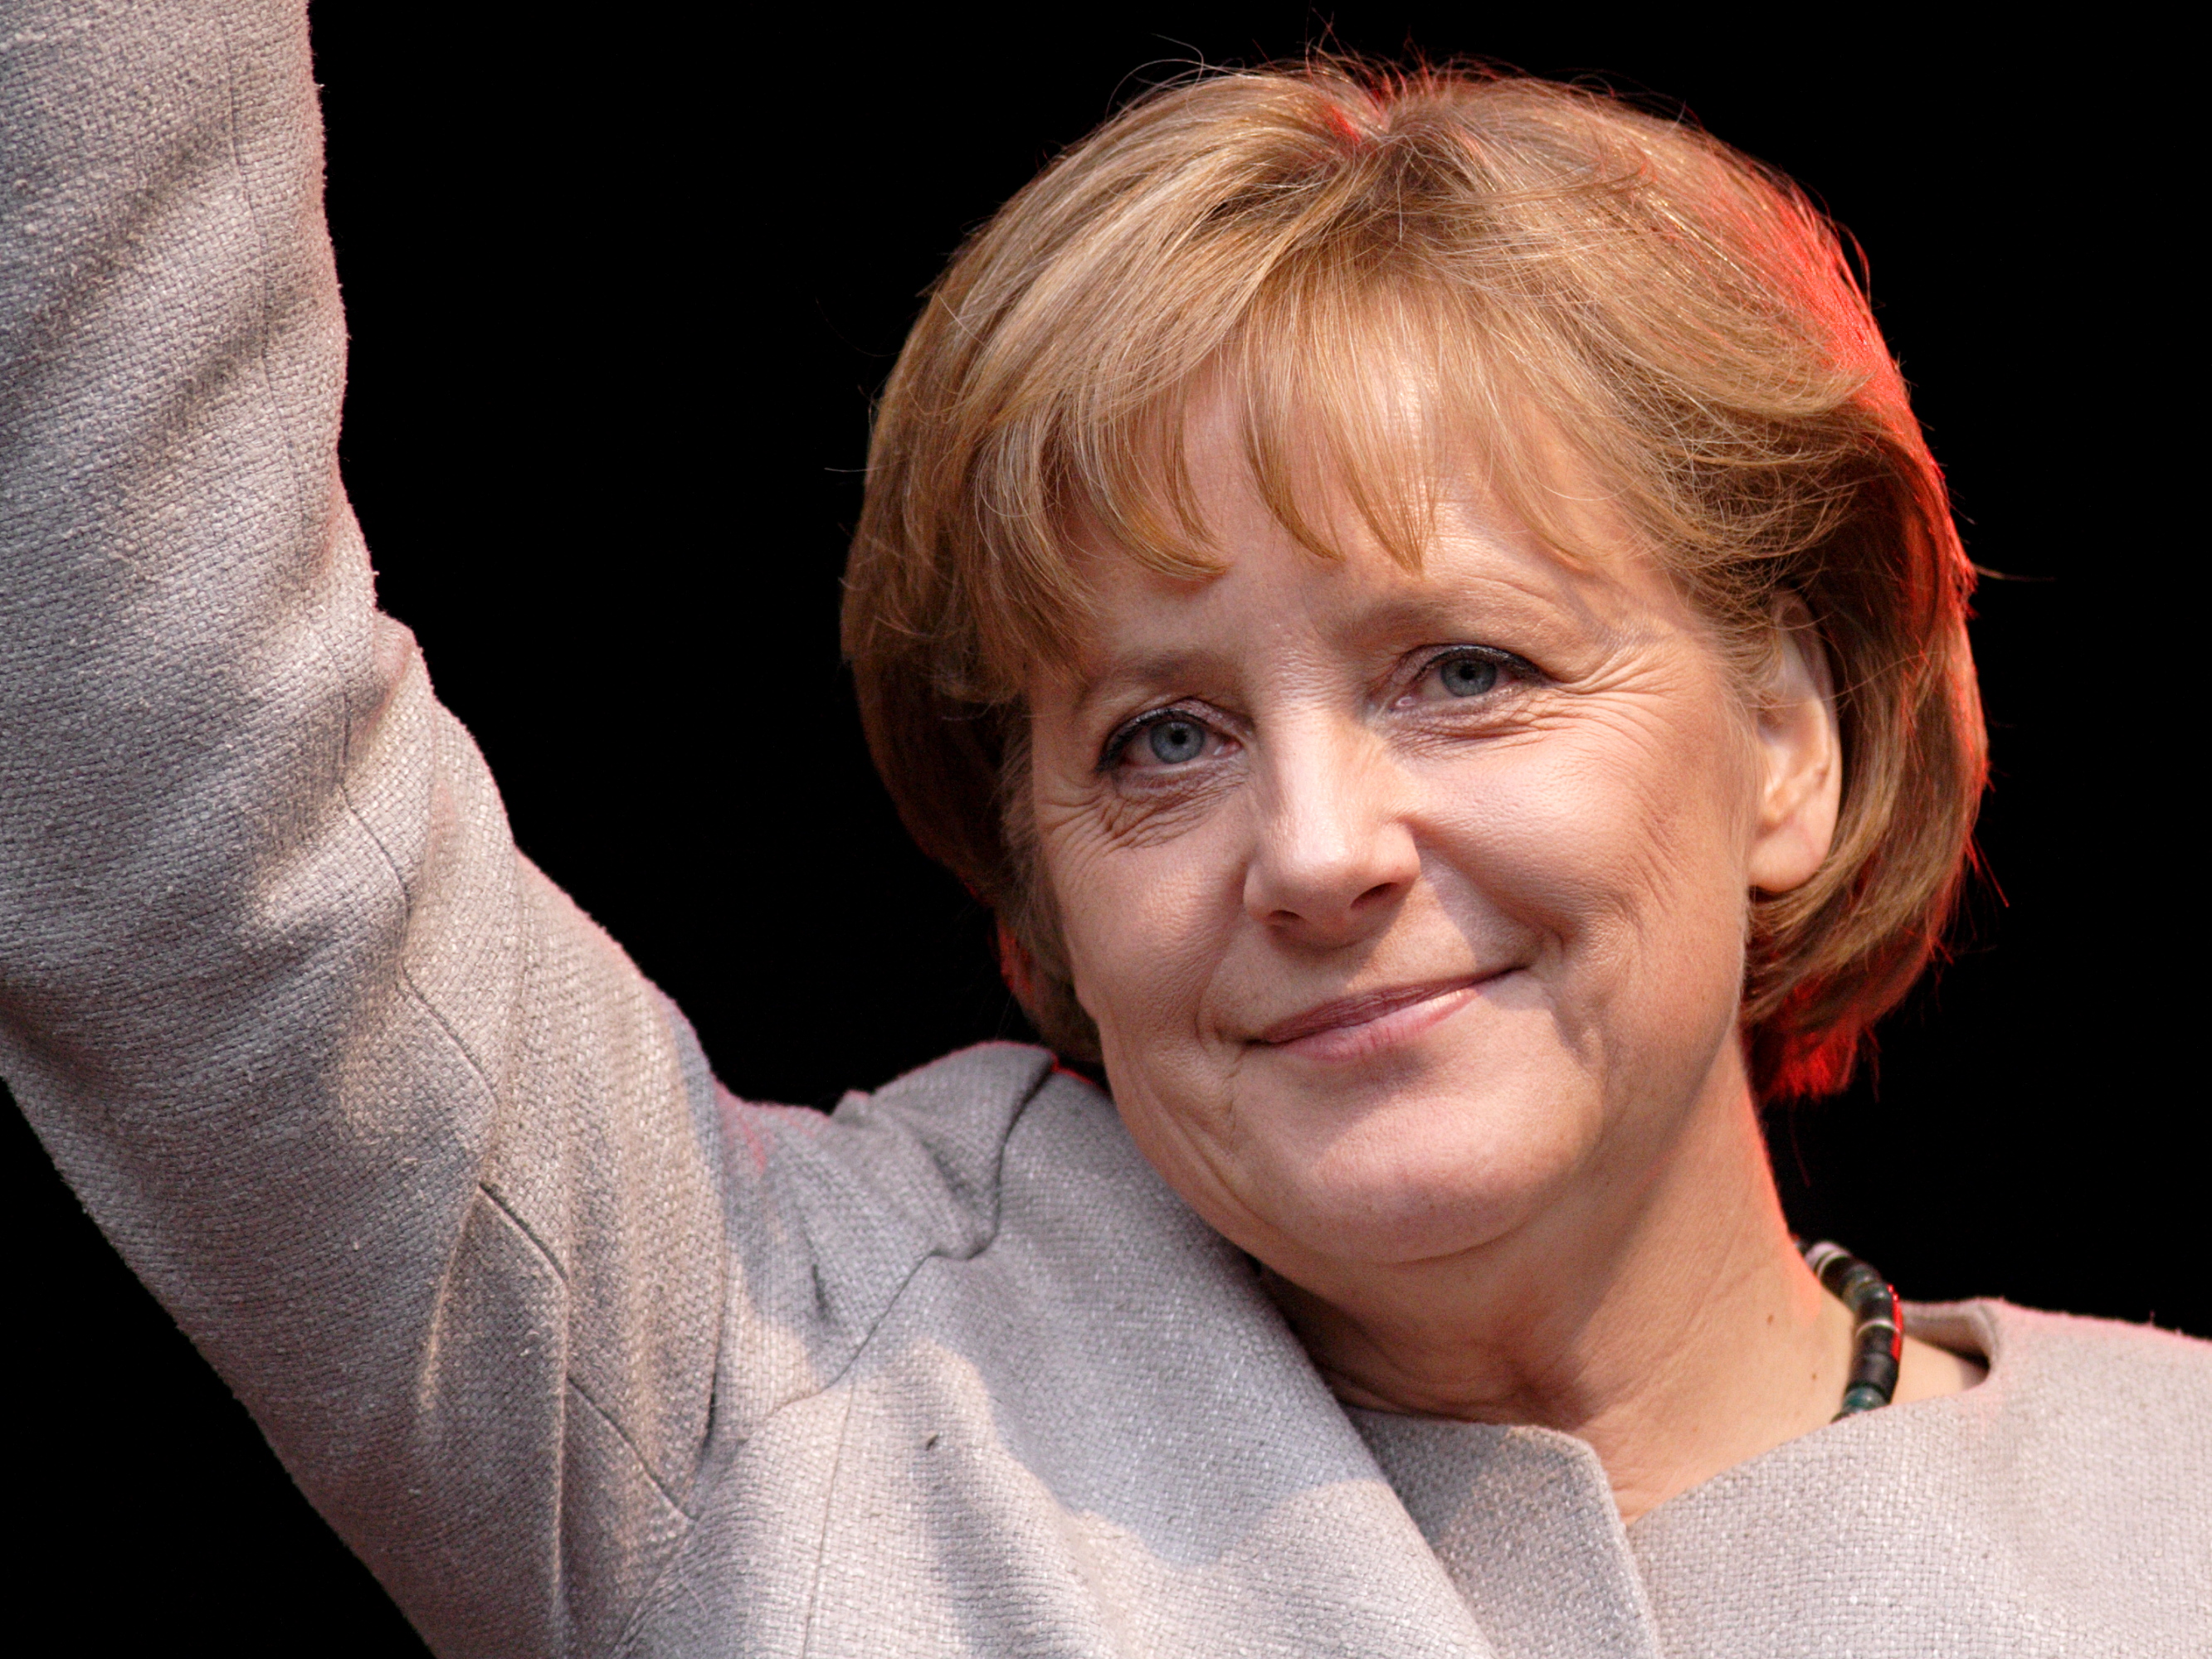 Szakértő: Merkel minden bizonnyal kancellár marad